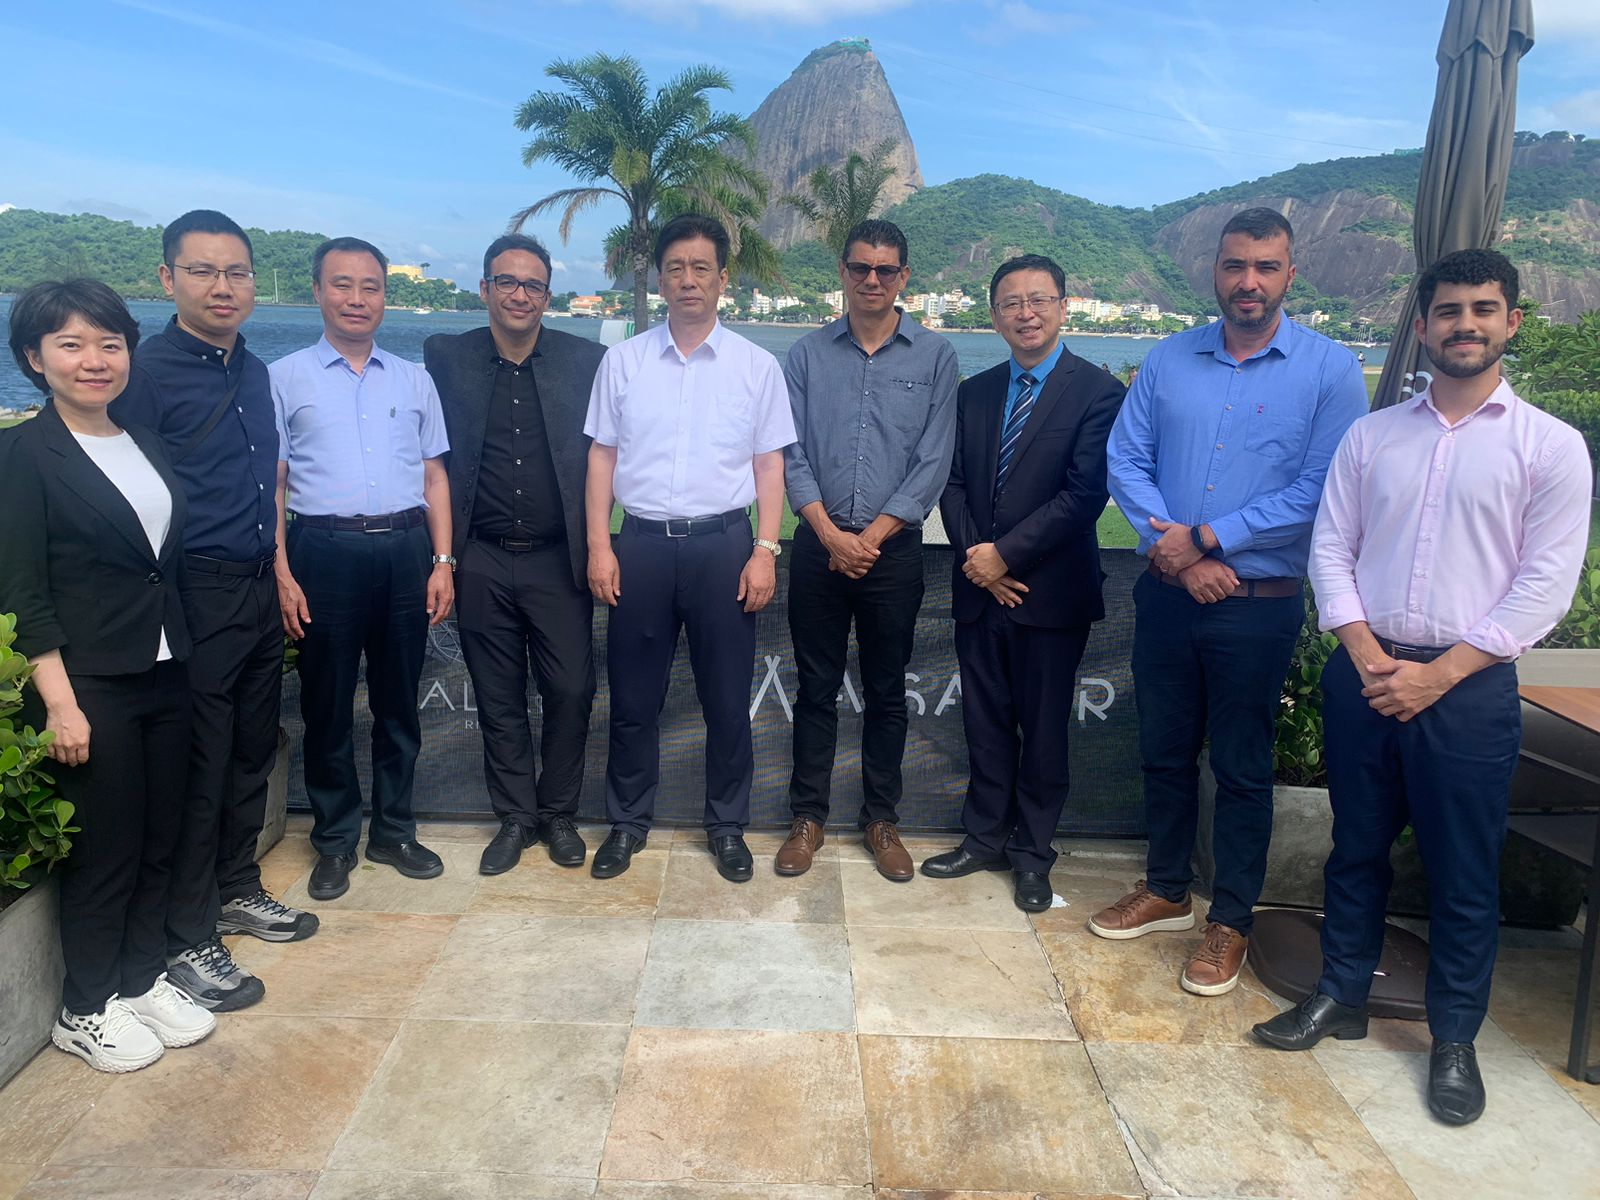  Comitiva de delegados da All-China em visita ao Brasil